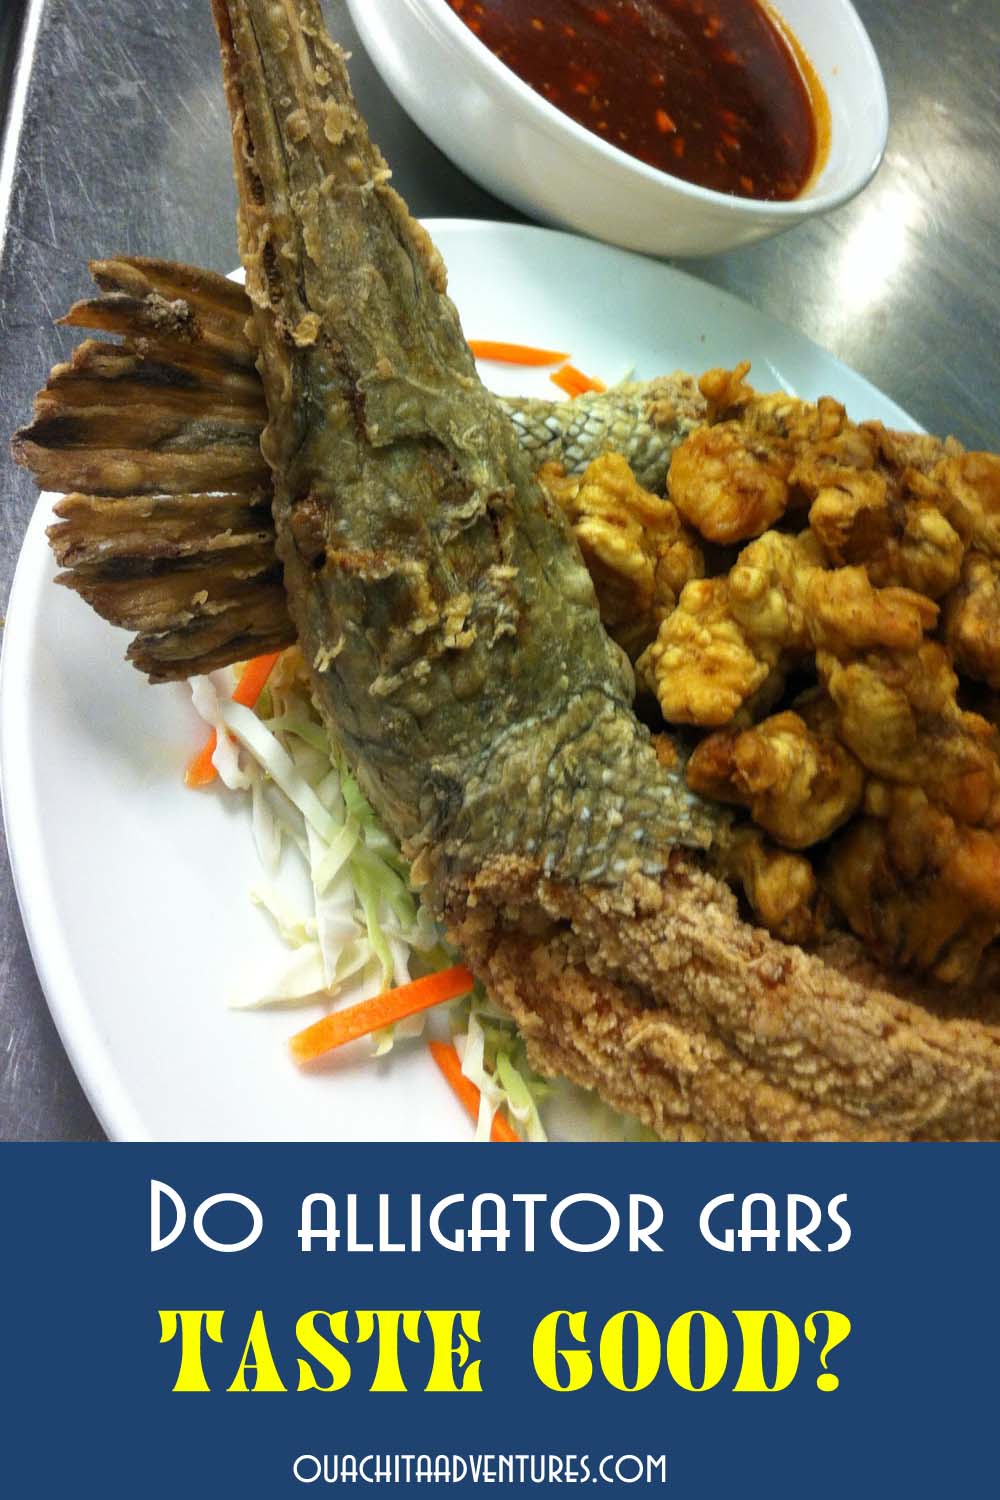 Do alligator gars taste good?